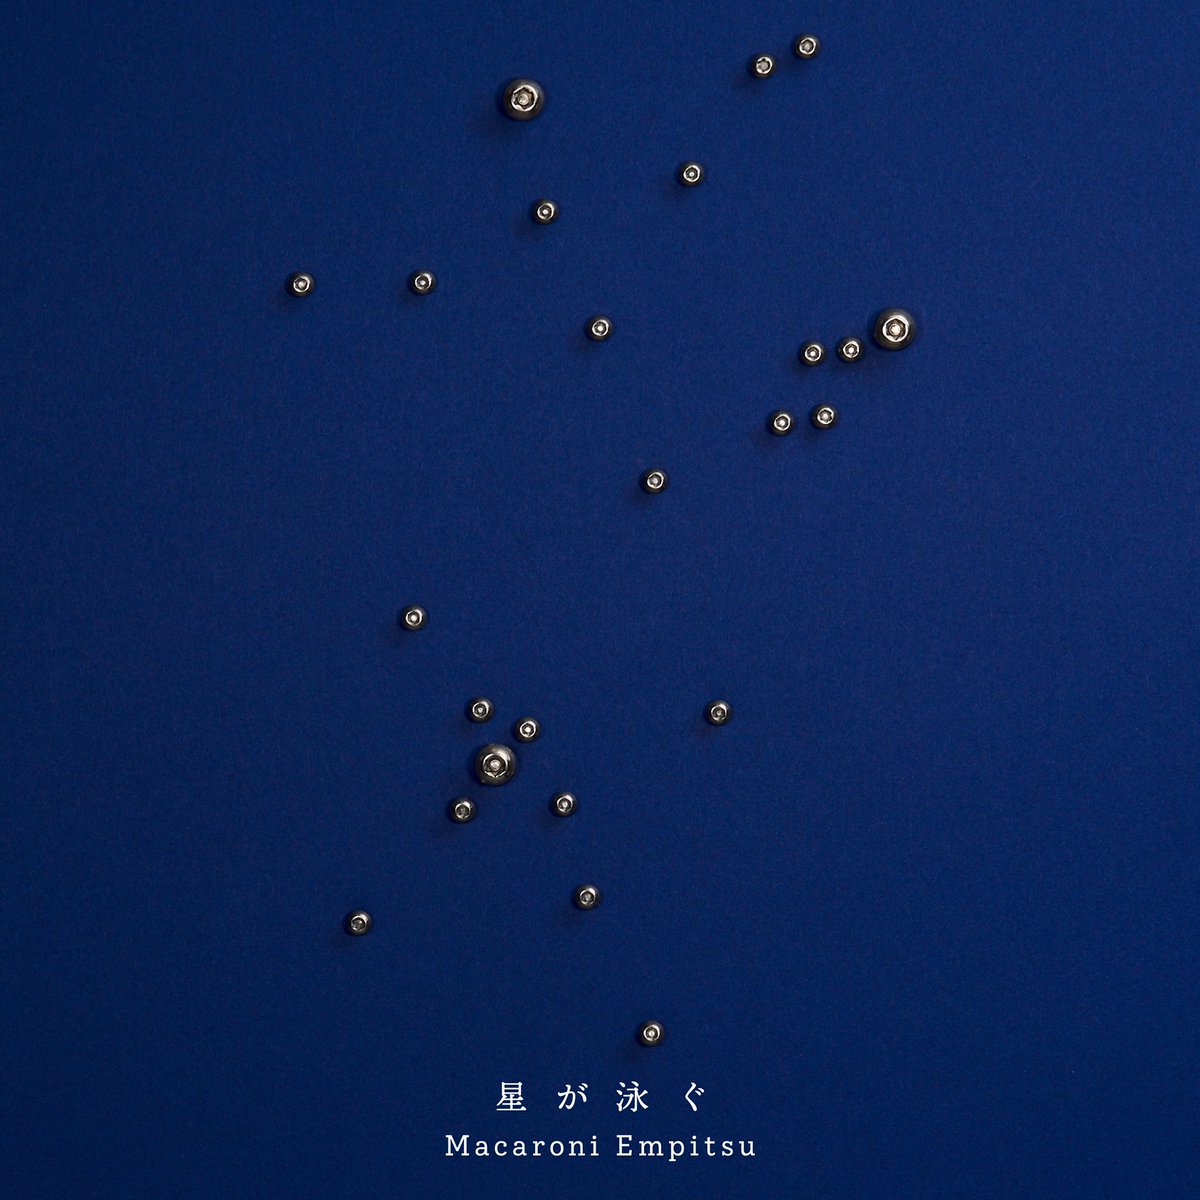 Cover image of『Macaroni EmpitsuHoshi ga Oyogu』from the Album『Hoshi ga Oyogu』